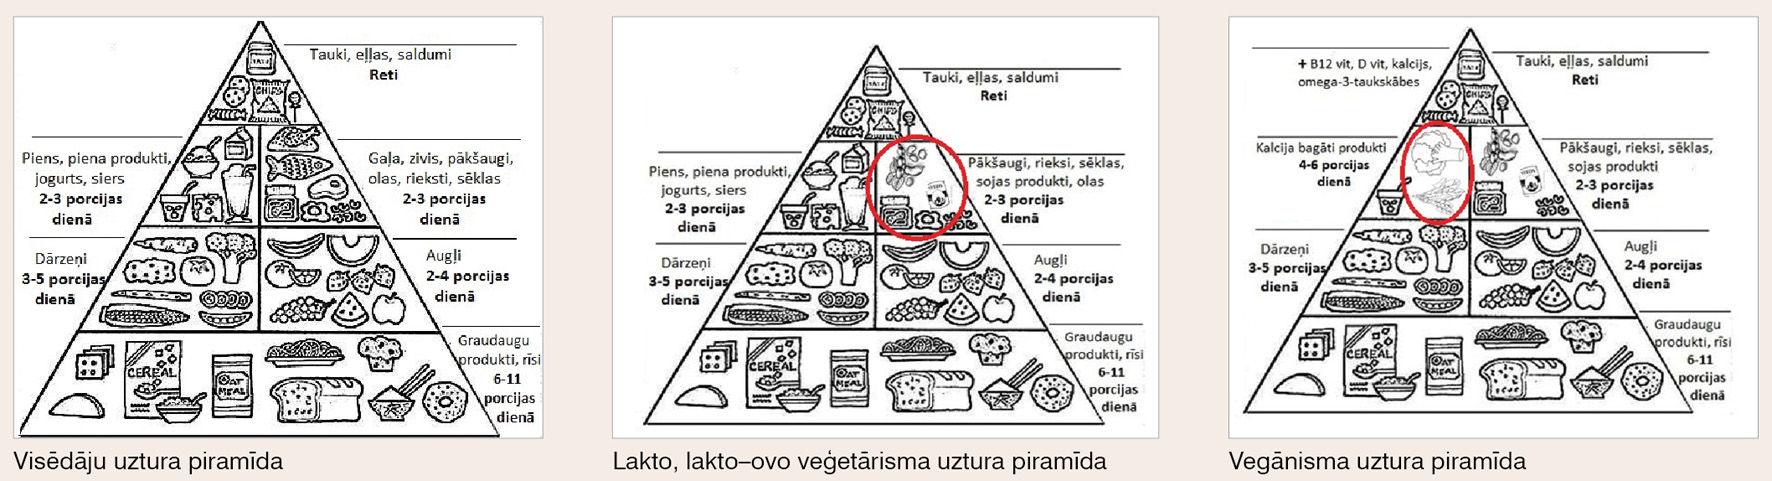 Visēdāju, lakto, lakto–ovo veģetārisma un vegānisma uztura piramīda